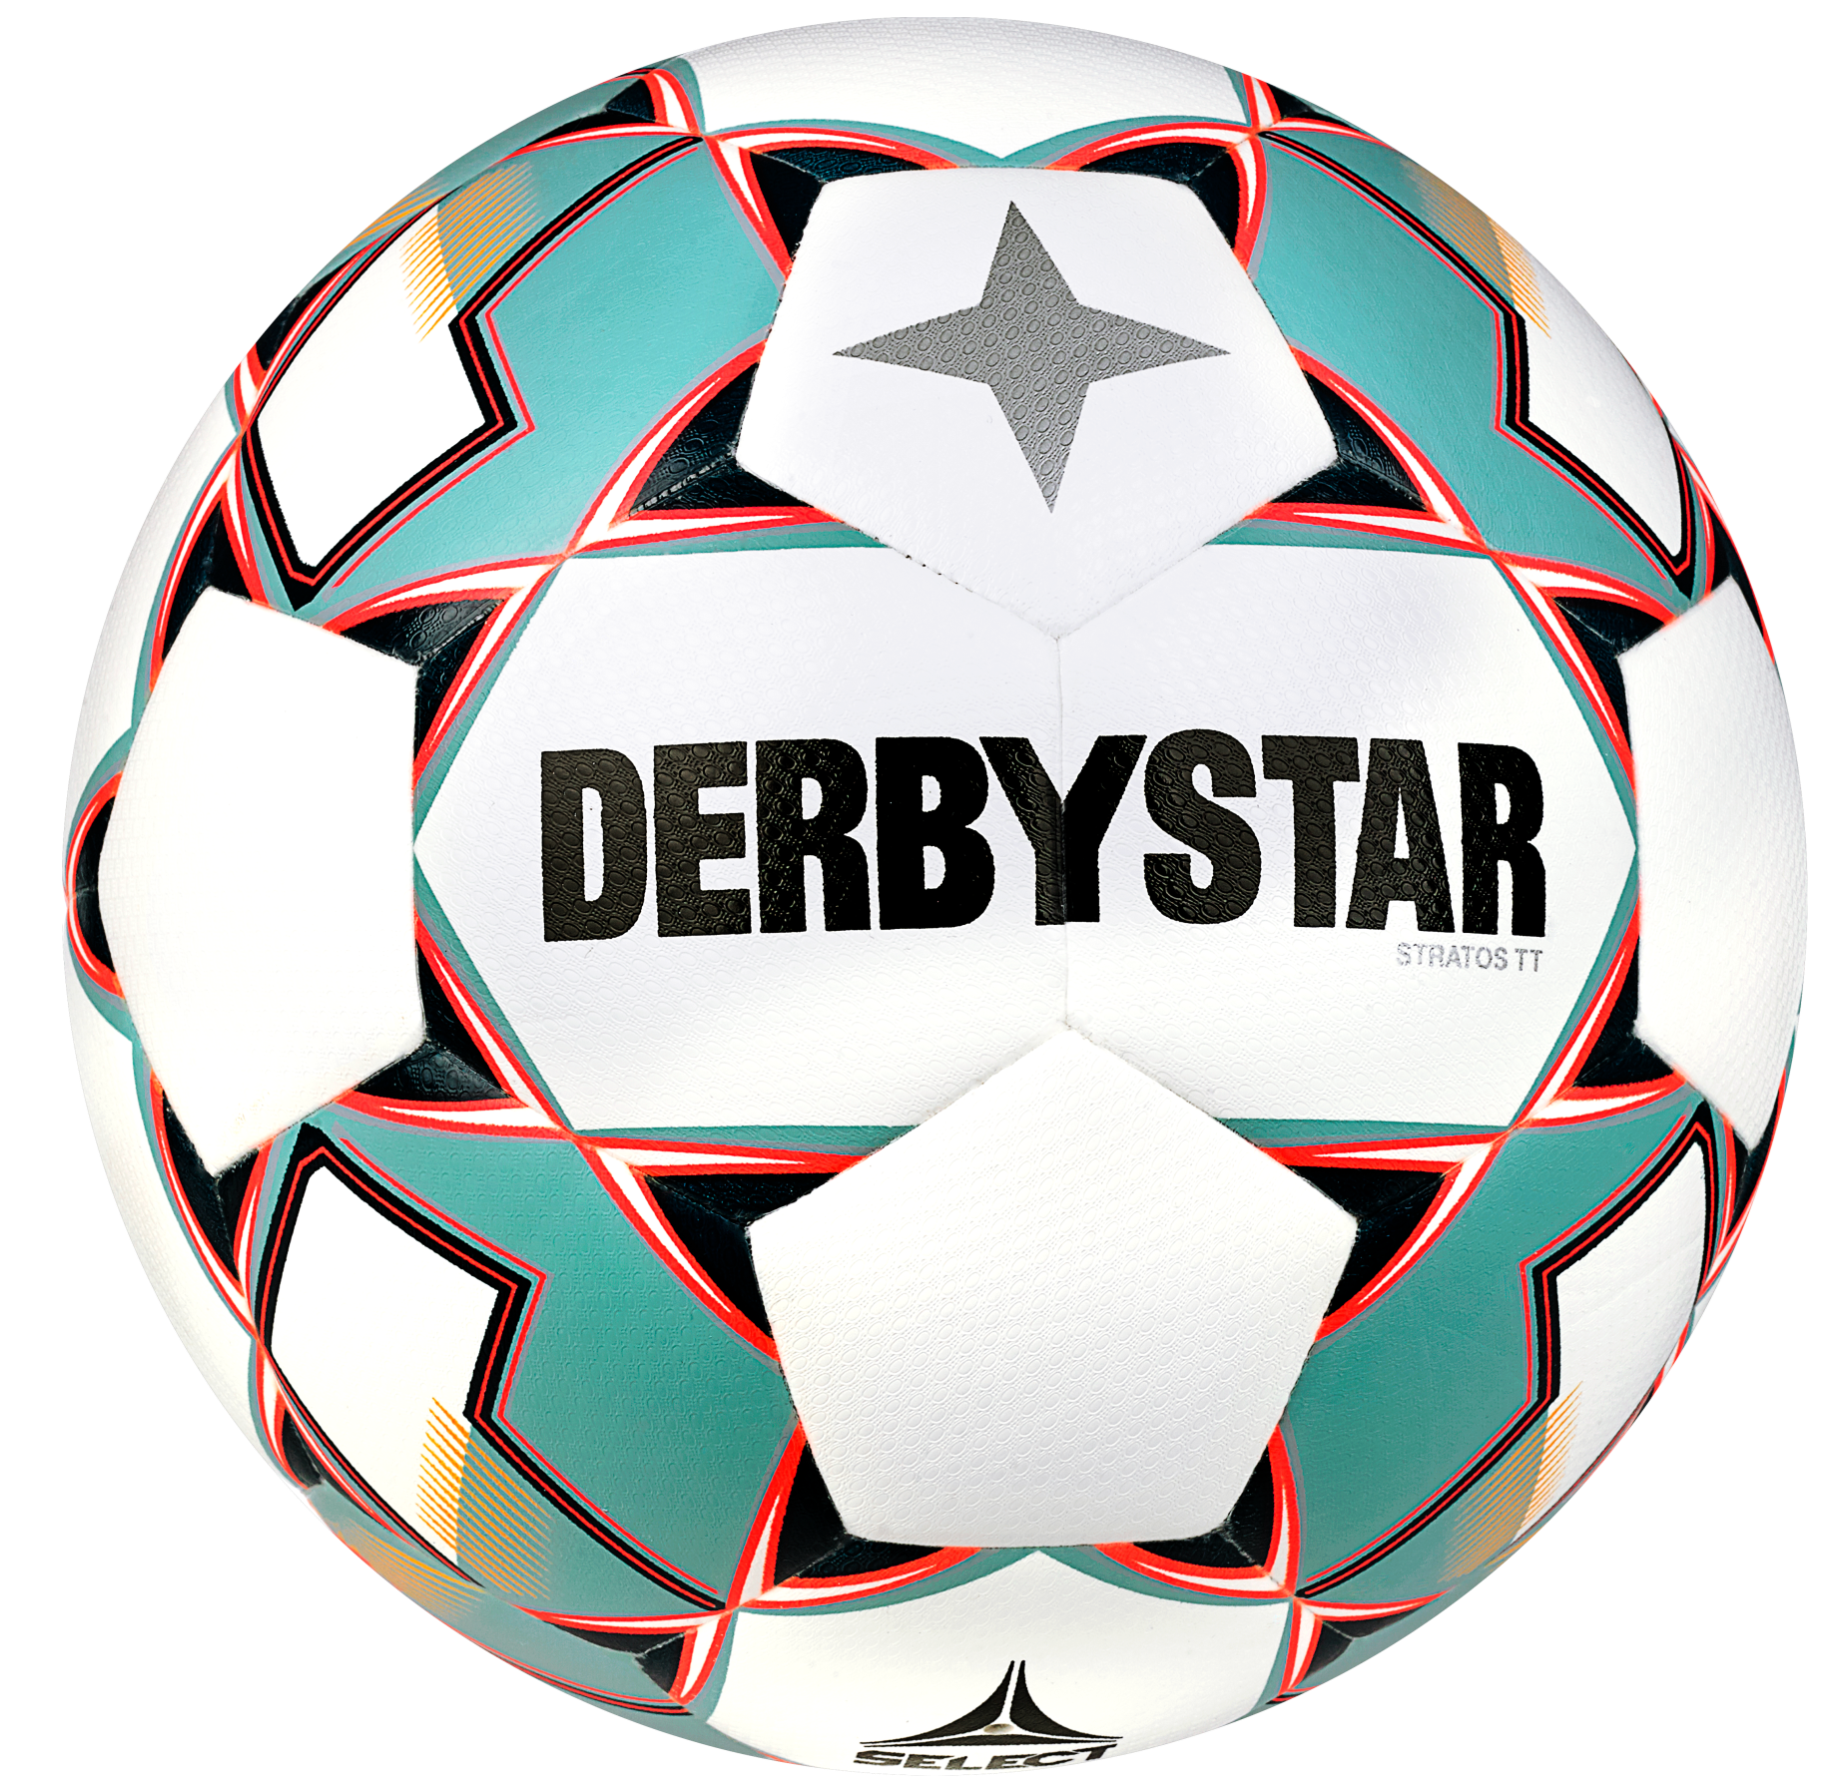 Minge Derbystar Stratos TT v23 Trainingsball